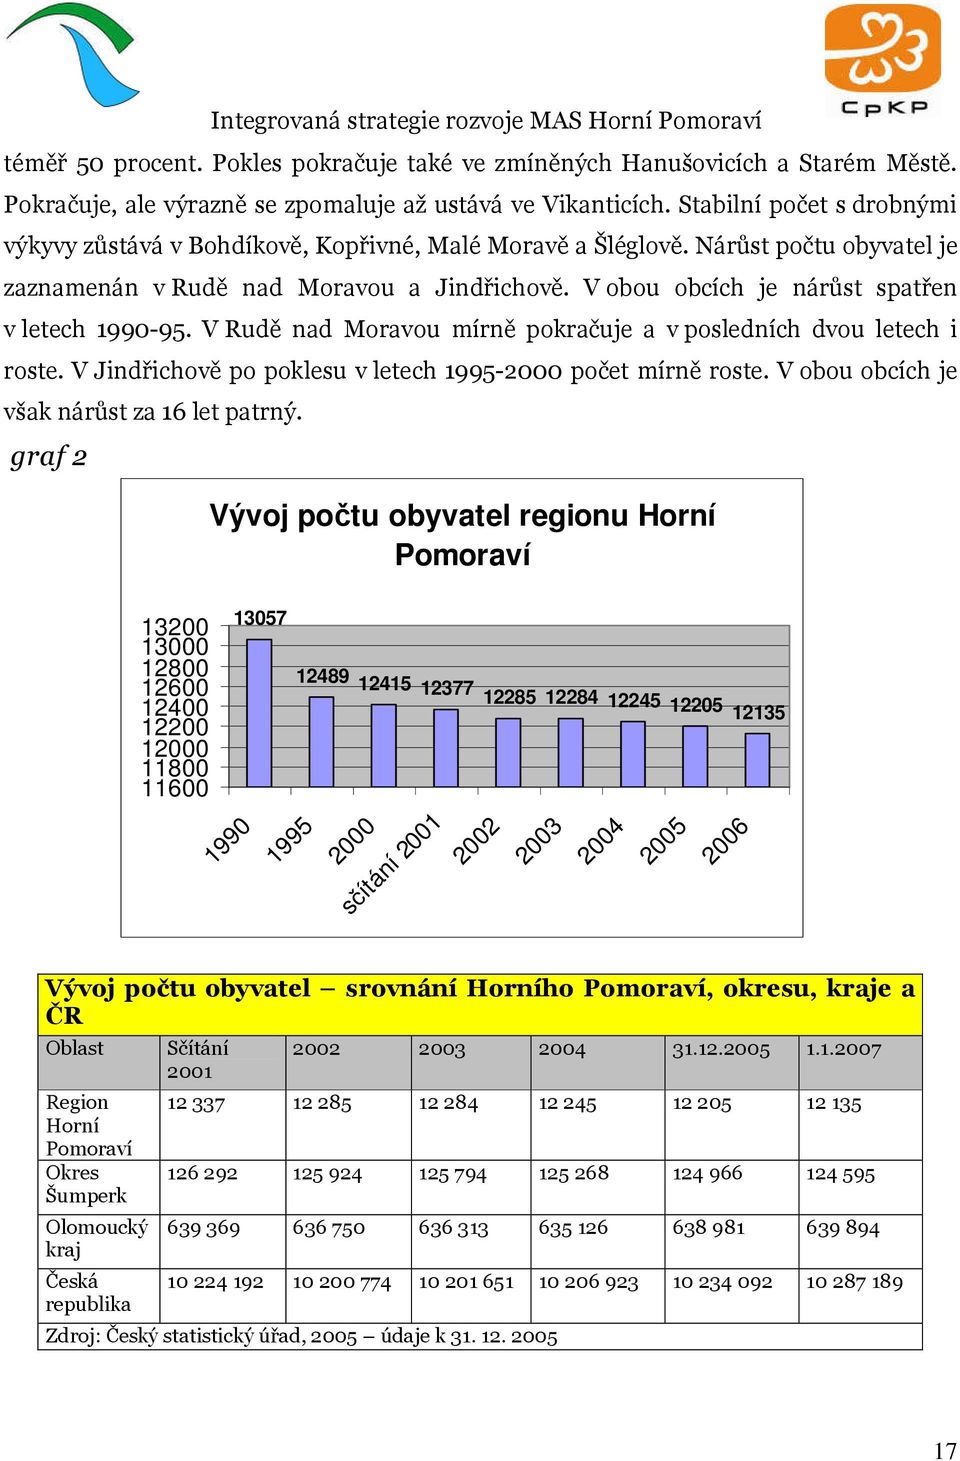 V obou obcích je nárůst spatřen v letech 1990-95. V Rudě nad Moravou mírně pokračuje a v posledních dvou letech i roste. V Jindřichově po poklesu v letech 1995-2000 počet mírně roste.